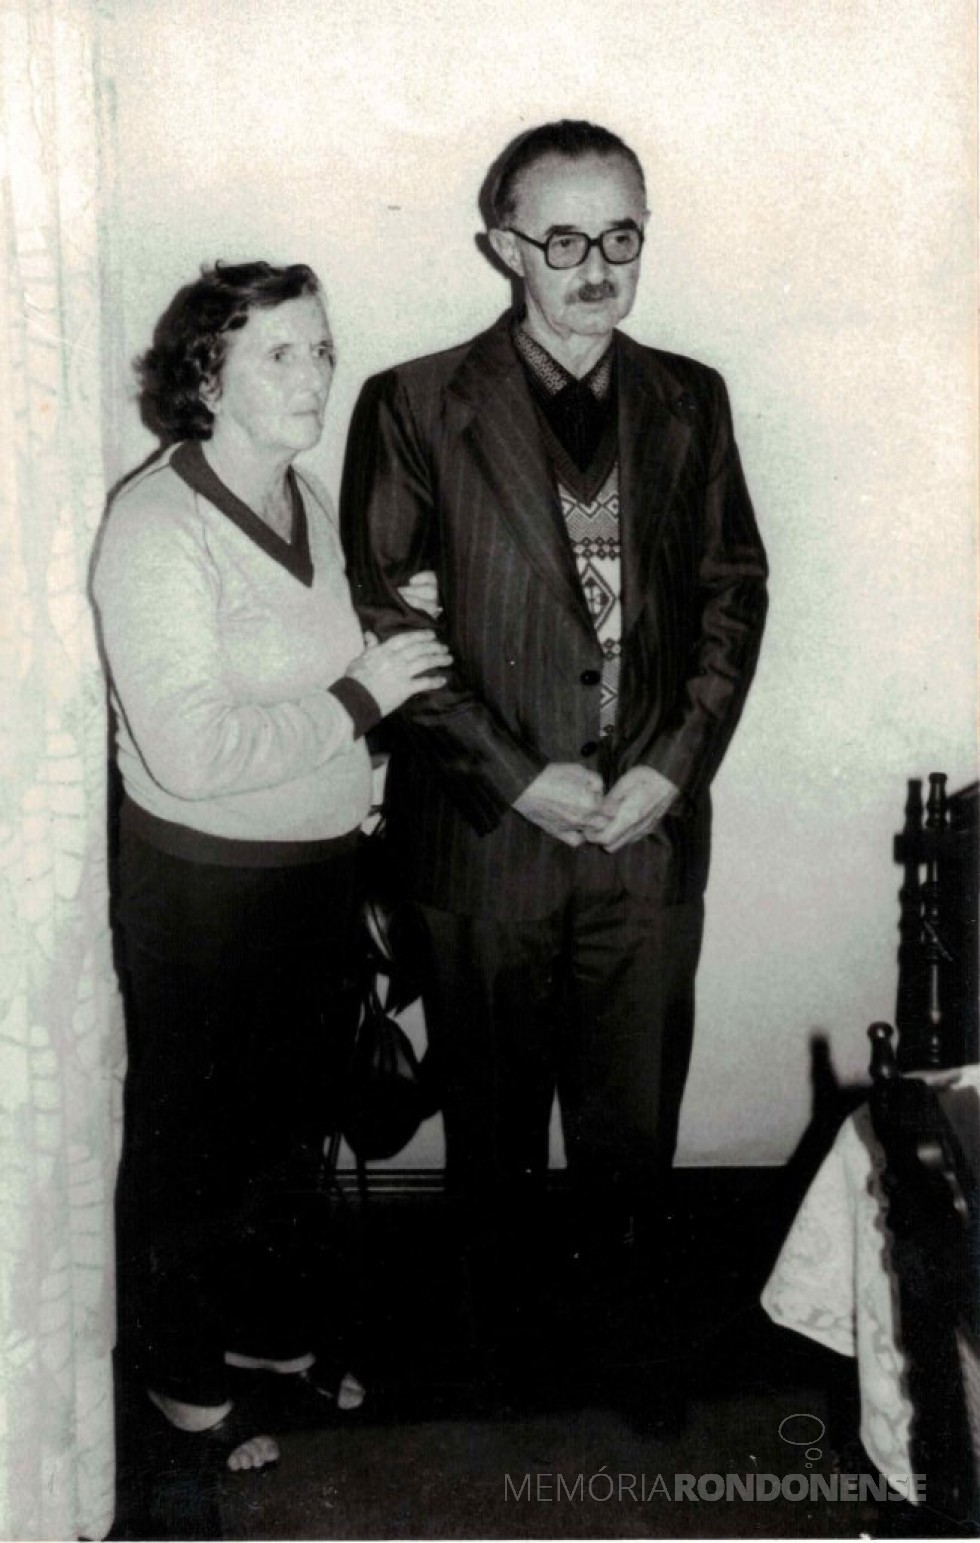 Casal Assumpta e Alcides Donin, ela primeiro funcionário da Prefeitura Municipal de Toledo, em fotografia da década de 1990.
Imagem: Acervo Museu Histórico Willy Barth (Toledo - PR) - FOTO 6 -